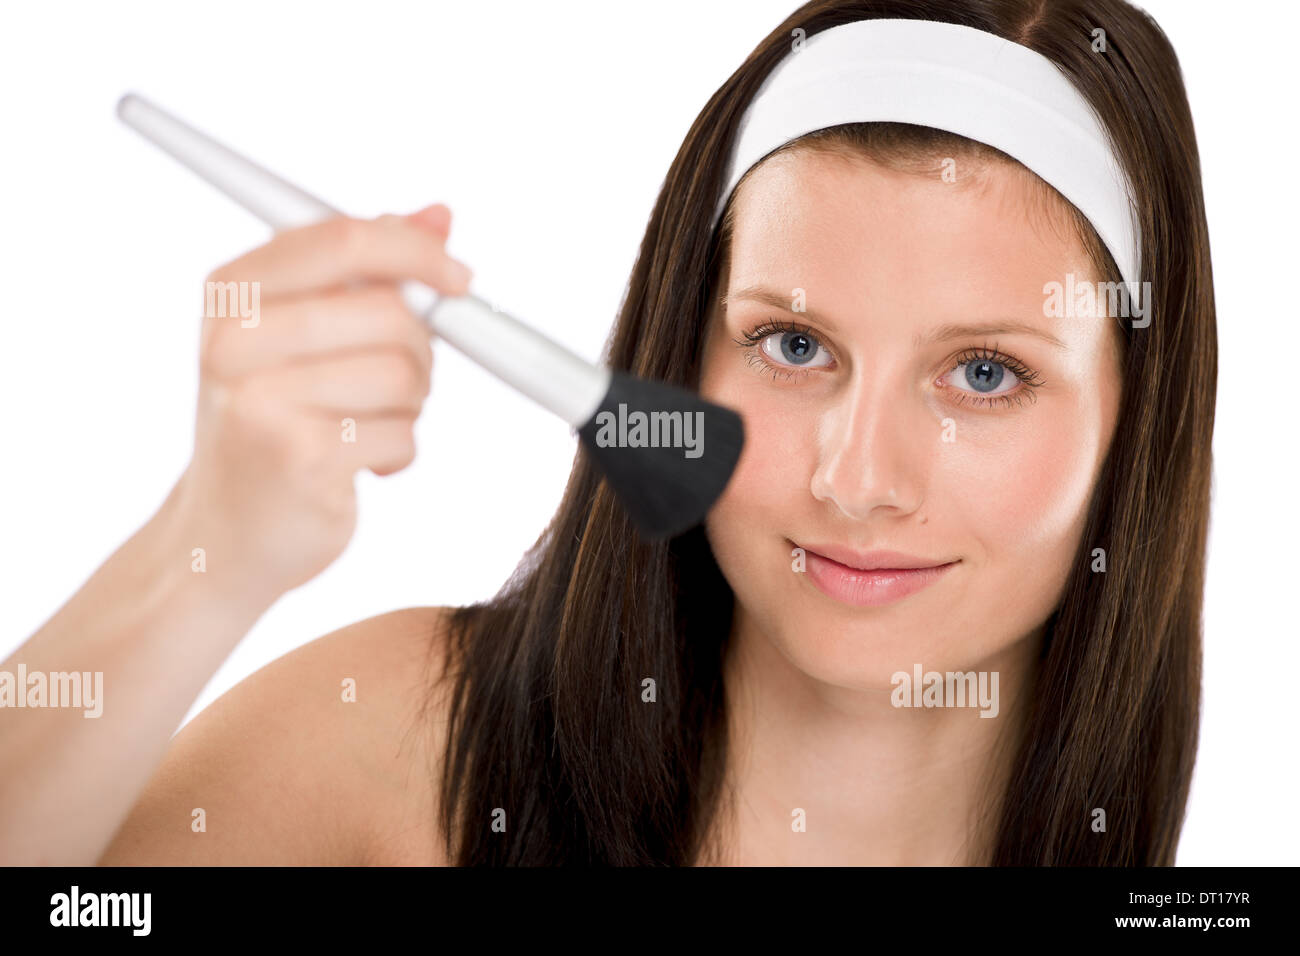 Beautiful woman holding make-up brush Stock Photo